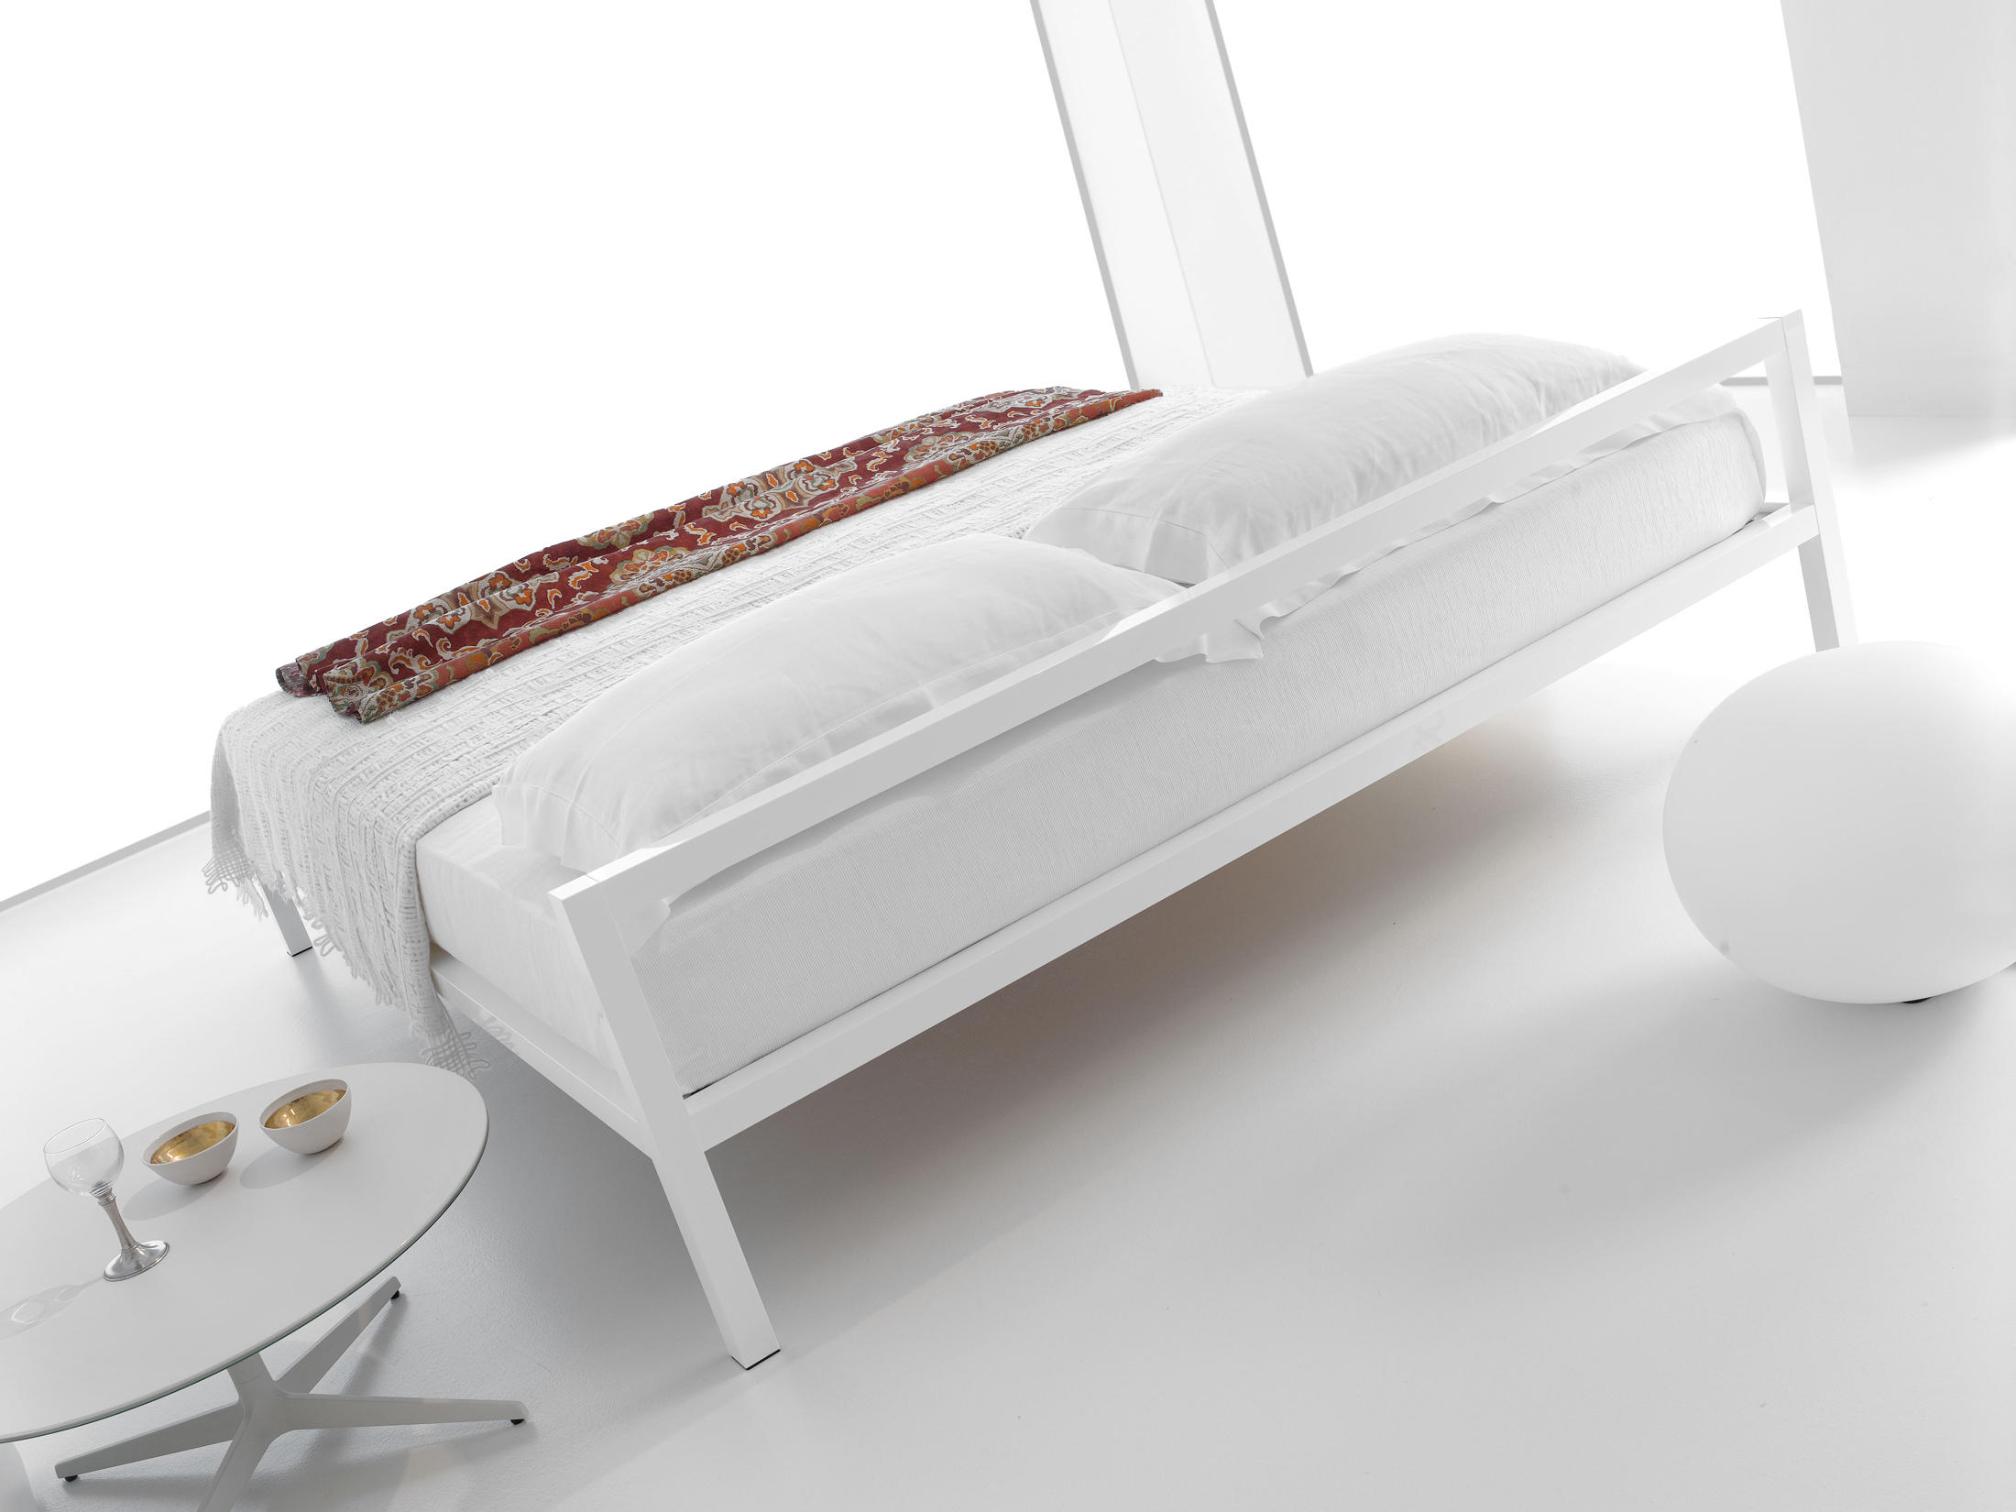 Aluminium Bed with Italian Precision ☞ Structure: Natural Anodized Aluminium X073 ☞ Dimensions: 150 x 210 cm